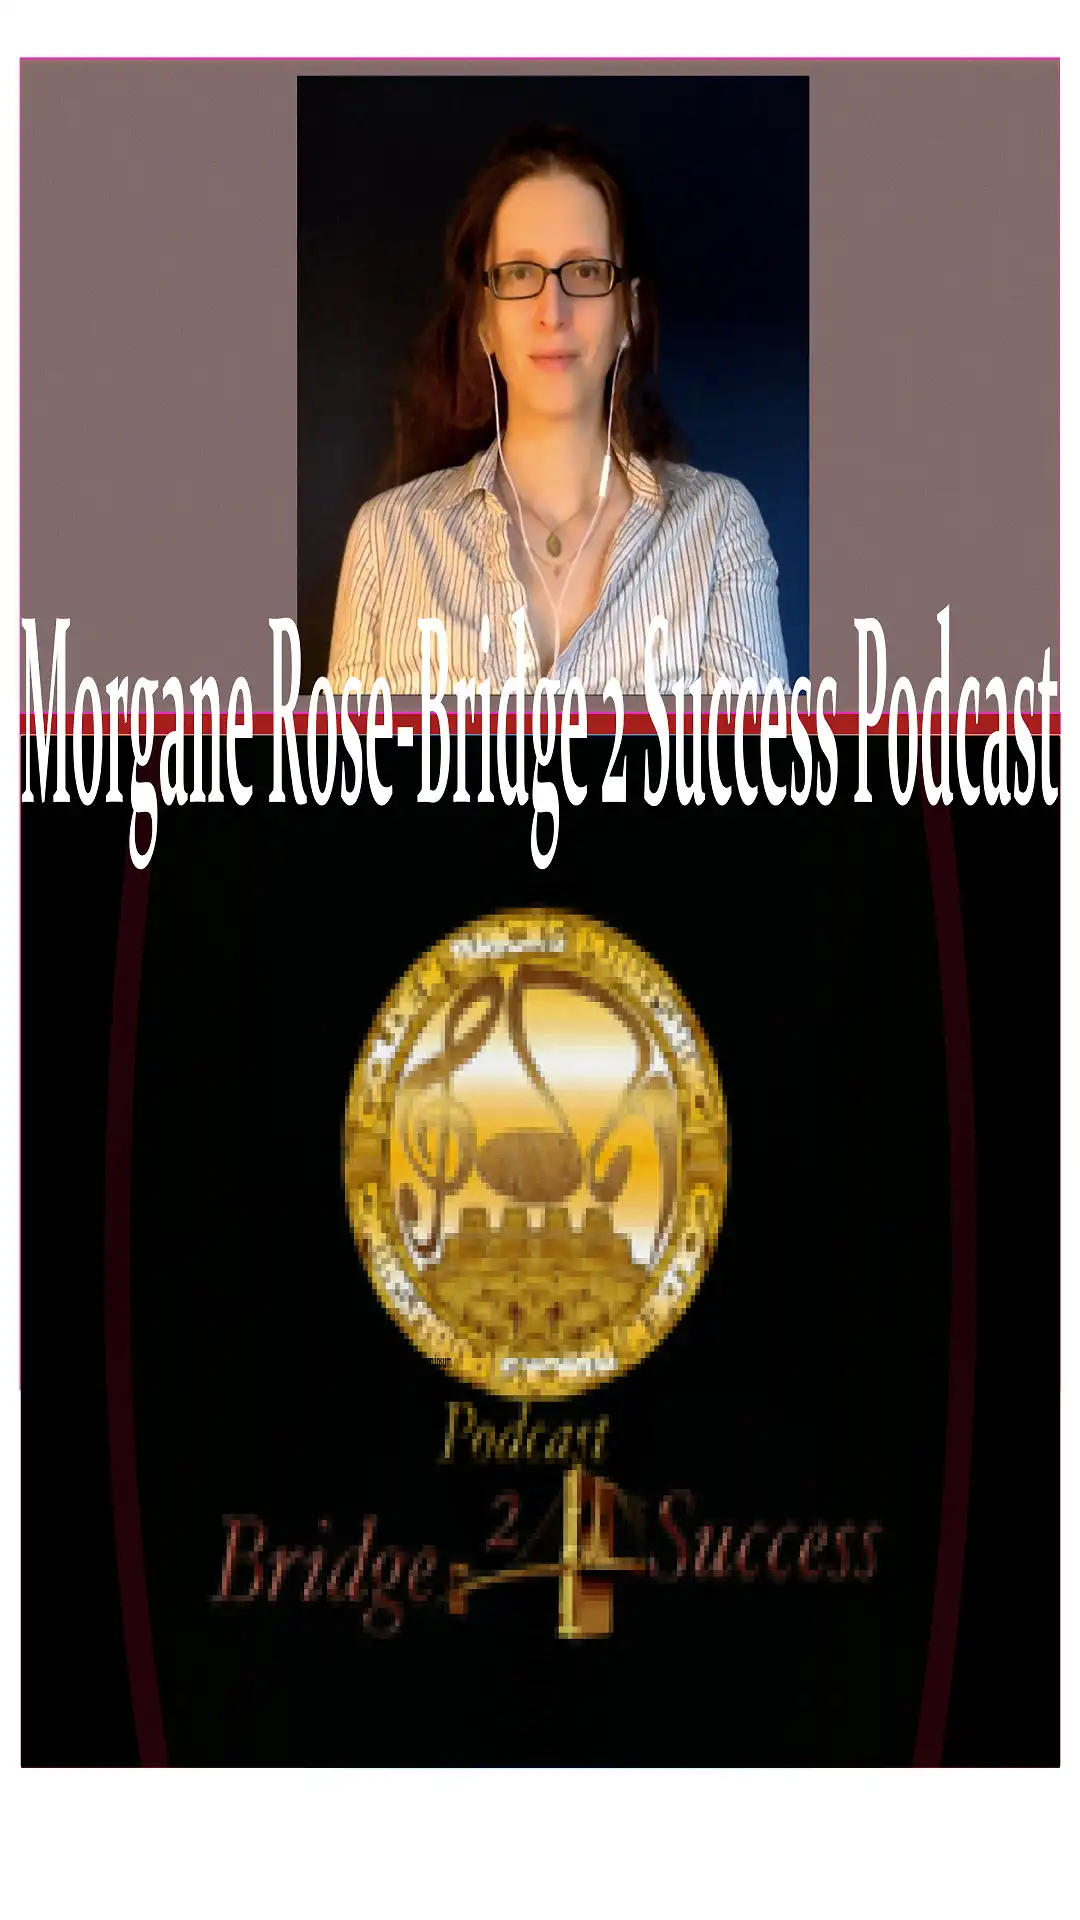 Morgane Rose-Bridge 2 Success Podcast